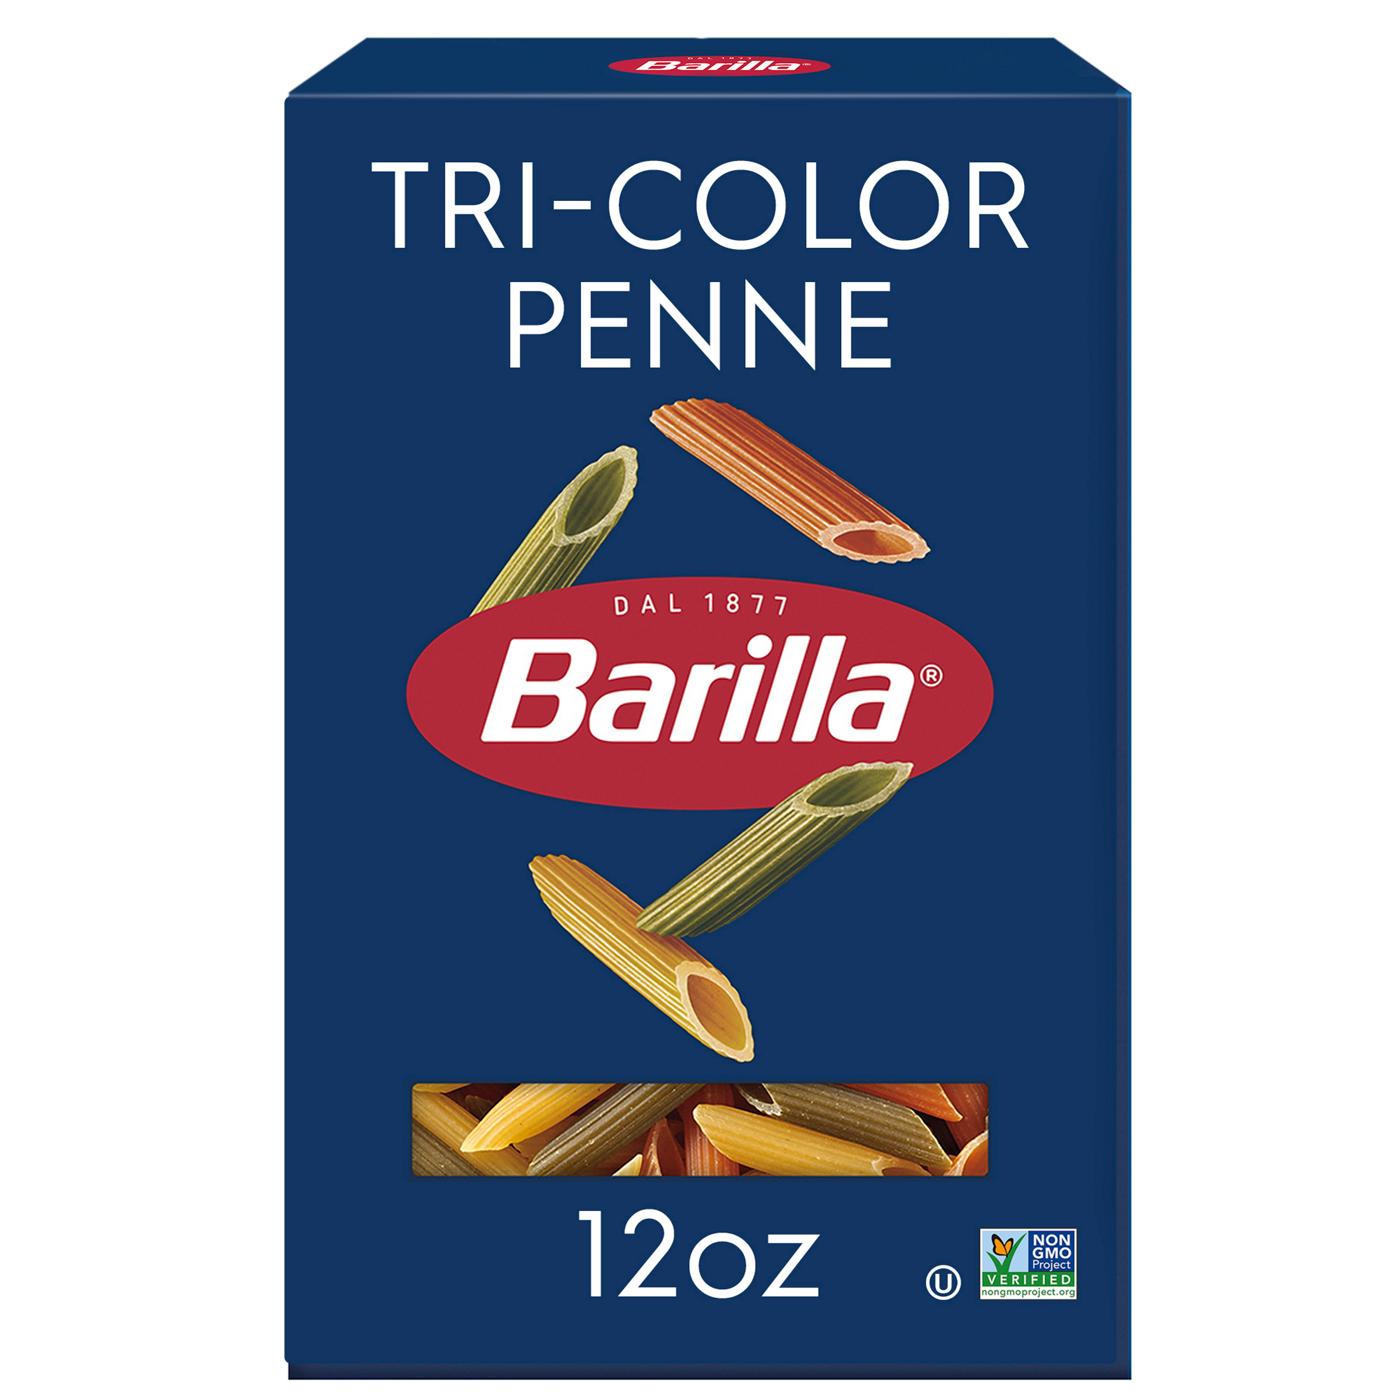 Barilla Tri-Color Penne Pasta; image 1 of 6